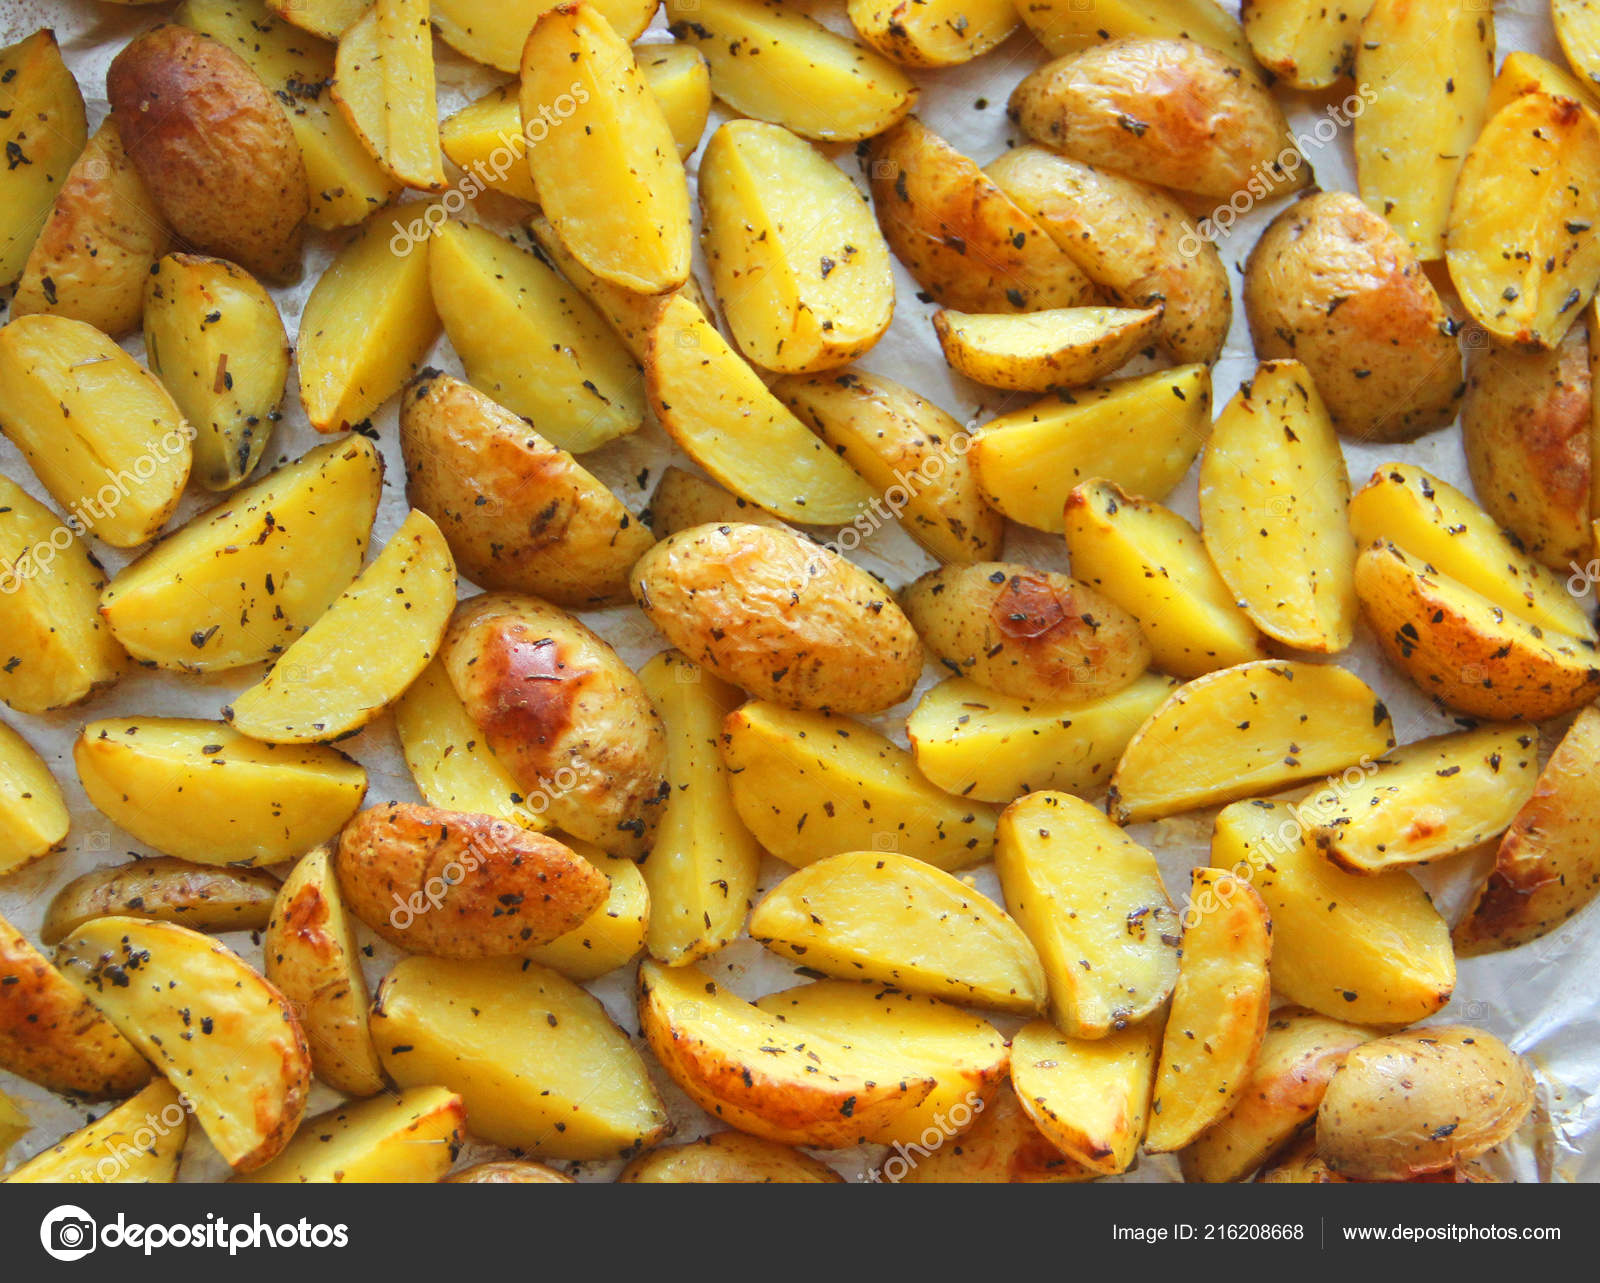 Рецепты целой картошки в духовке. Картошка в духовке. Картошка в духовке запеченная. Печёная картошка в духовке. Кошка запеченная в духовке.